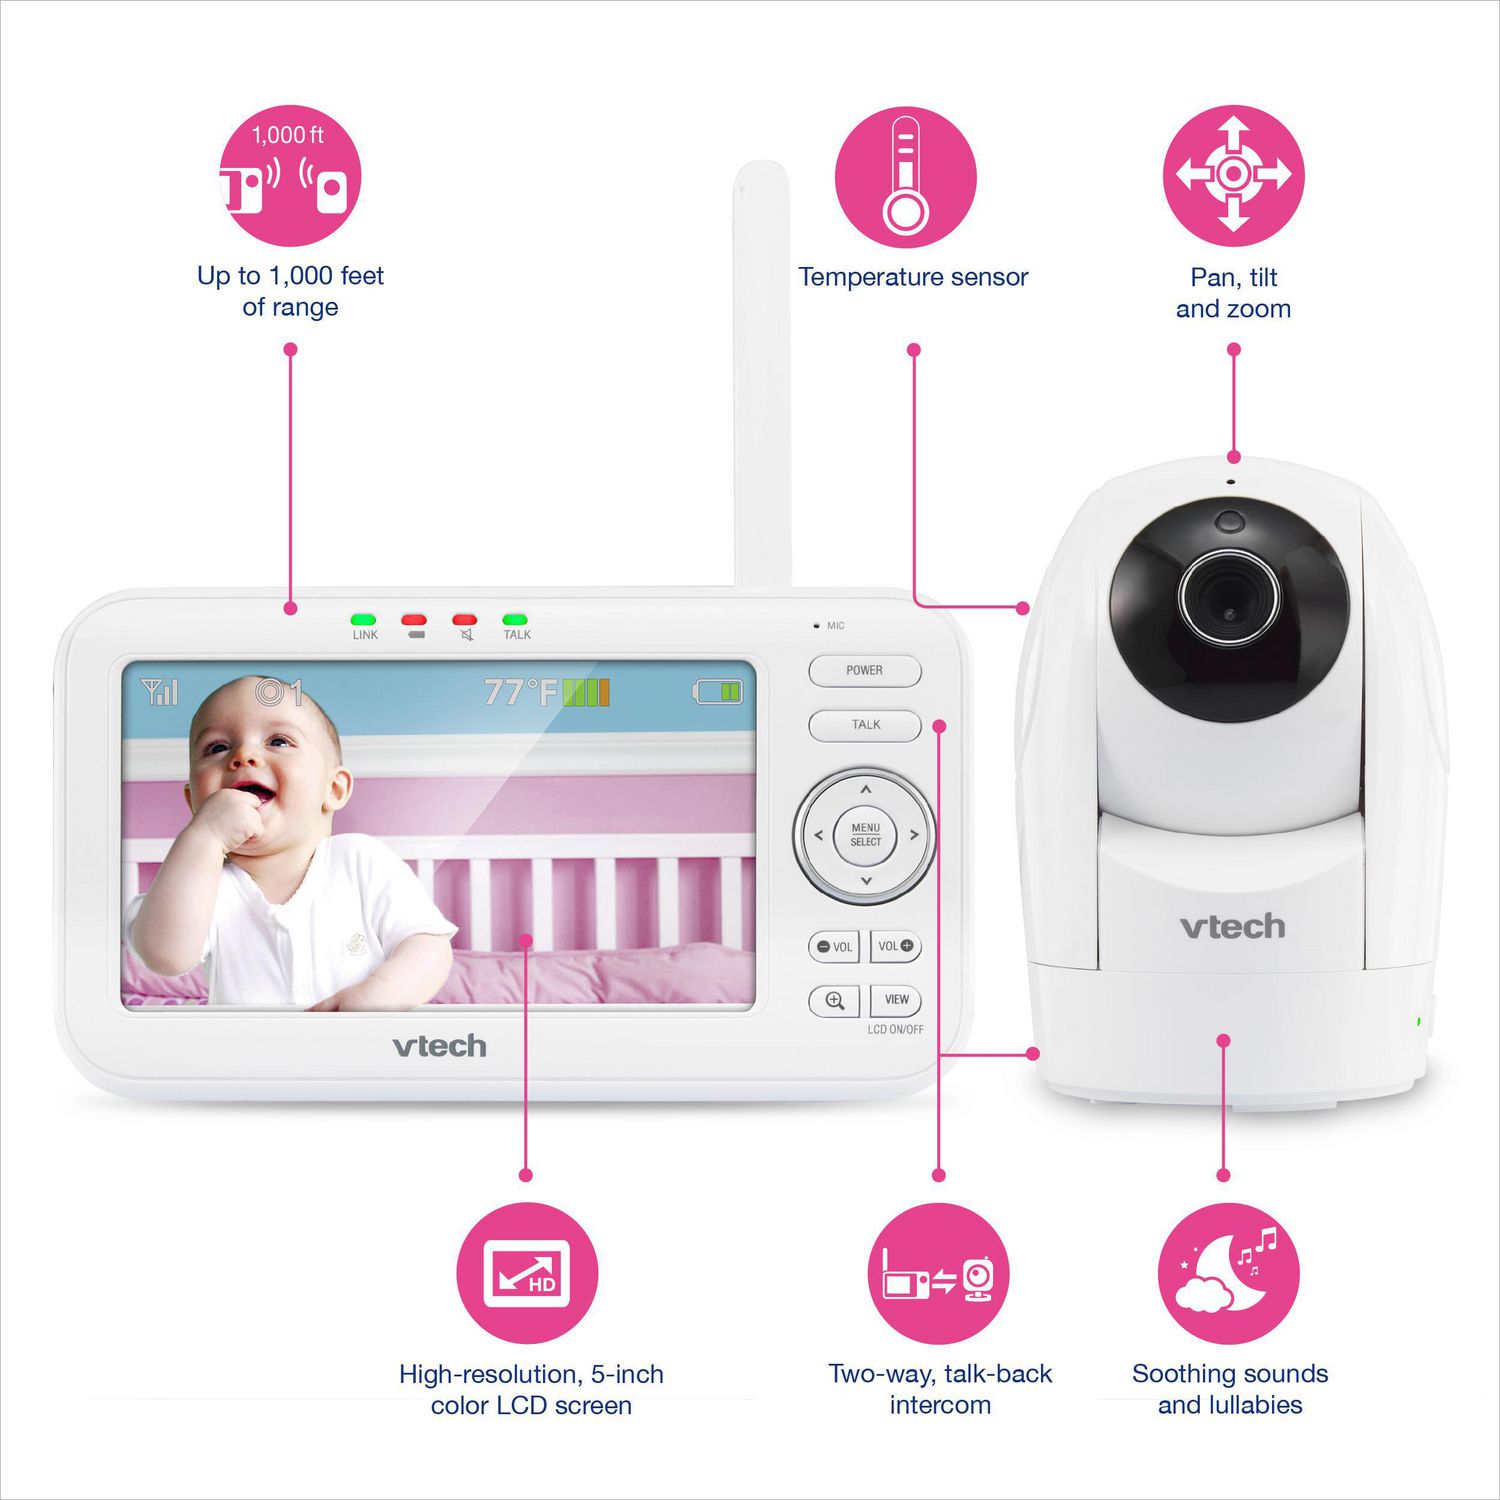 VTech VM5262 5” Digital Video Baby Monitor with Pan & Tilt Camera